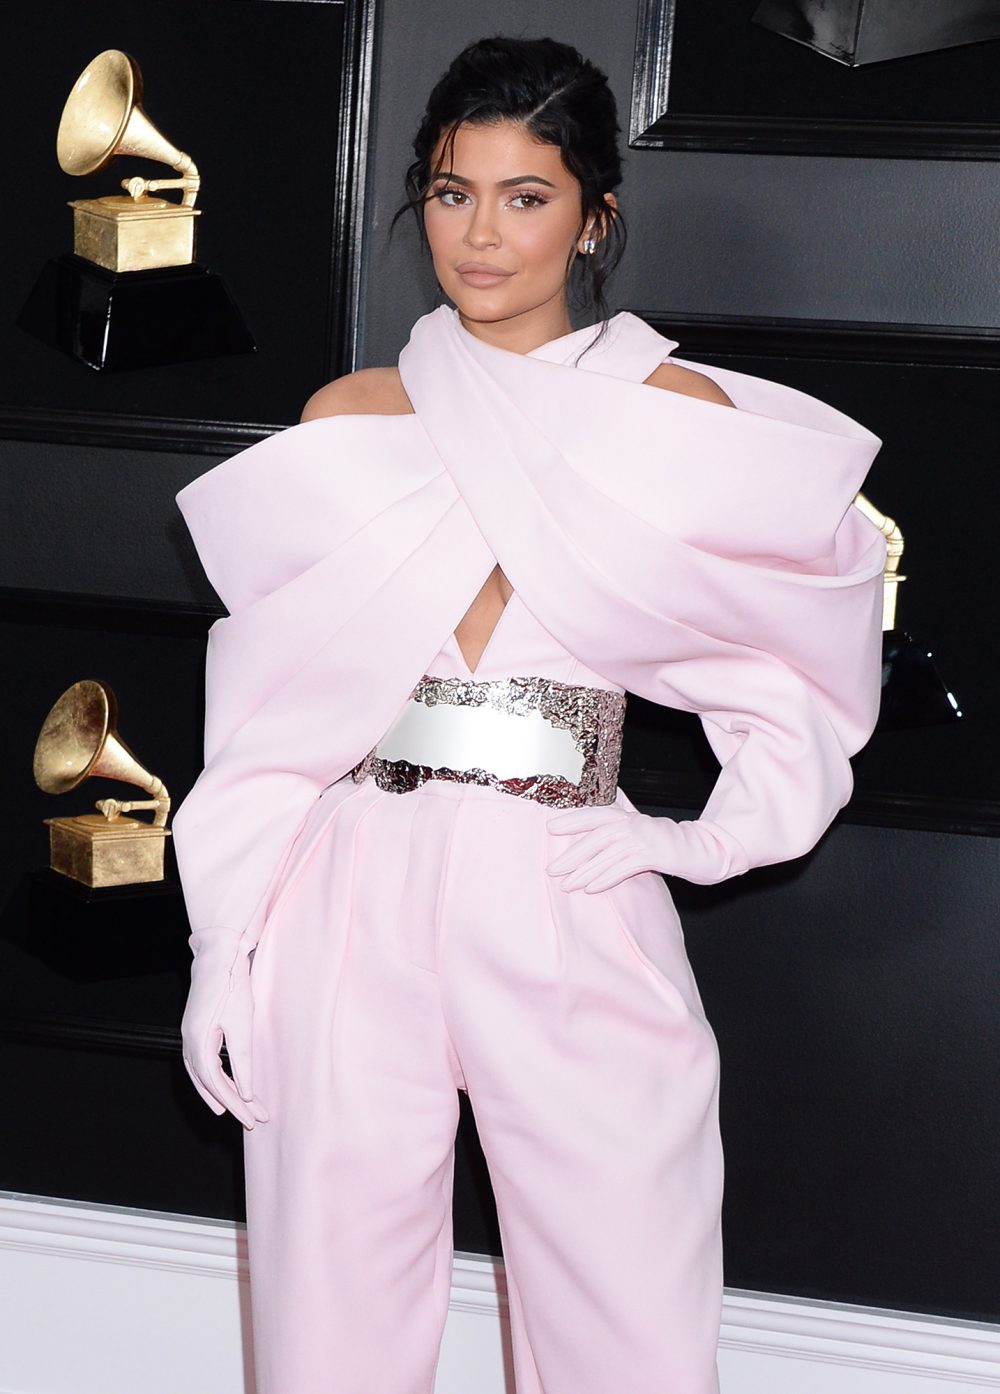 Kylie Jenner Feeling Better After Hospitalization